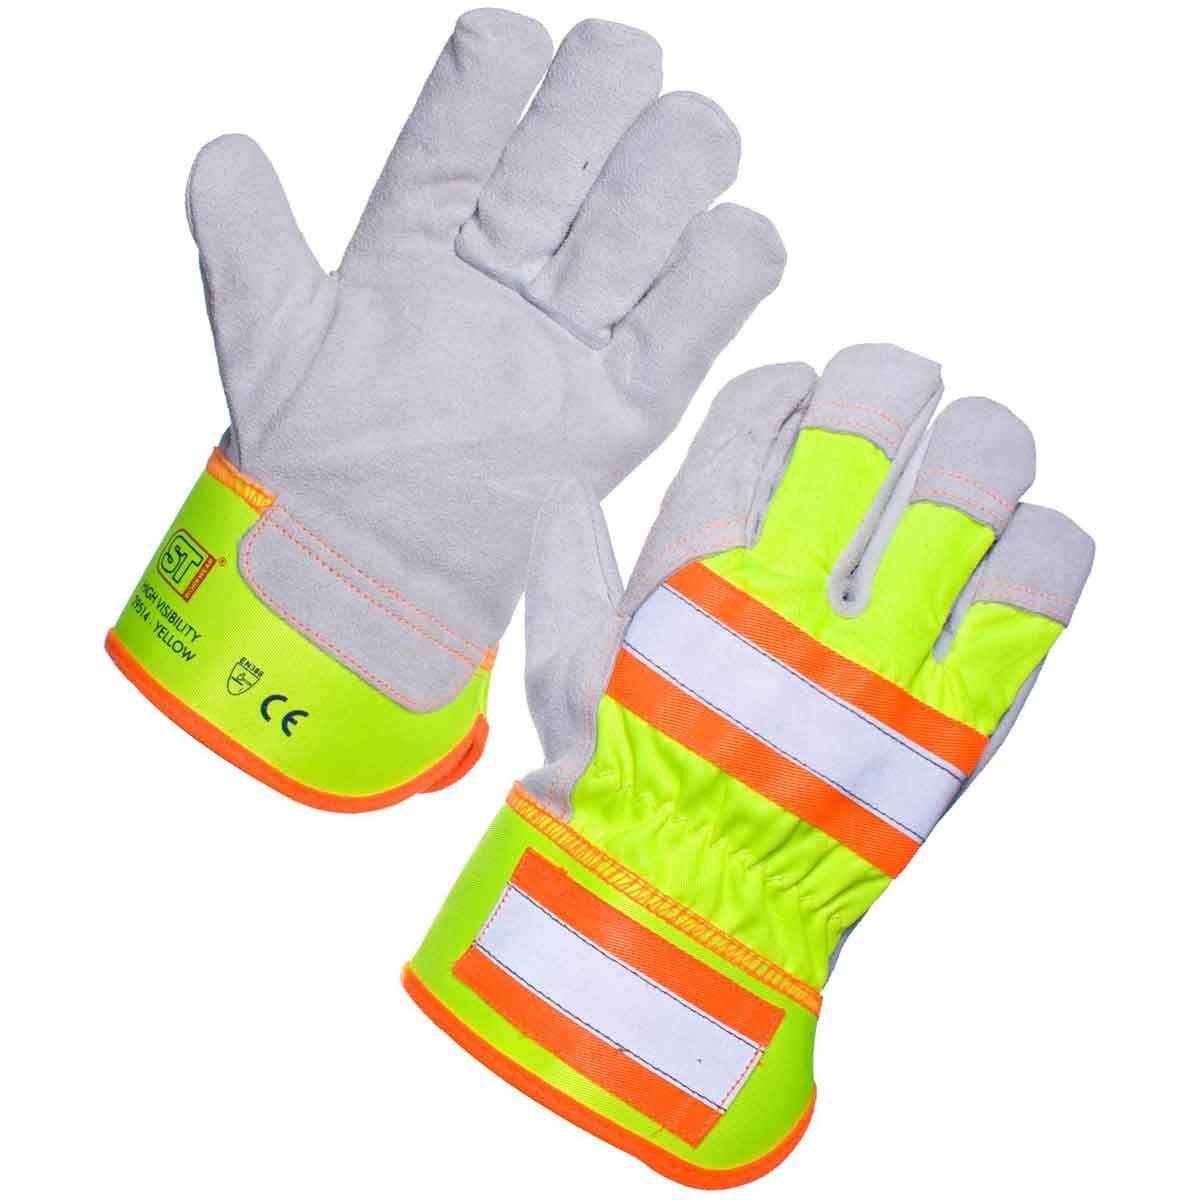 Work & Safety Gloves